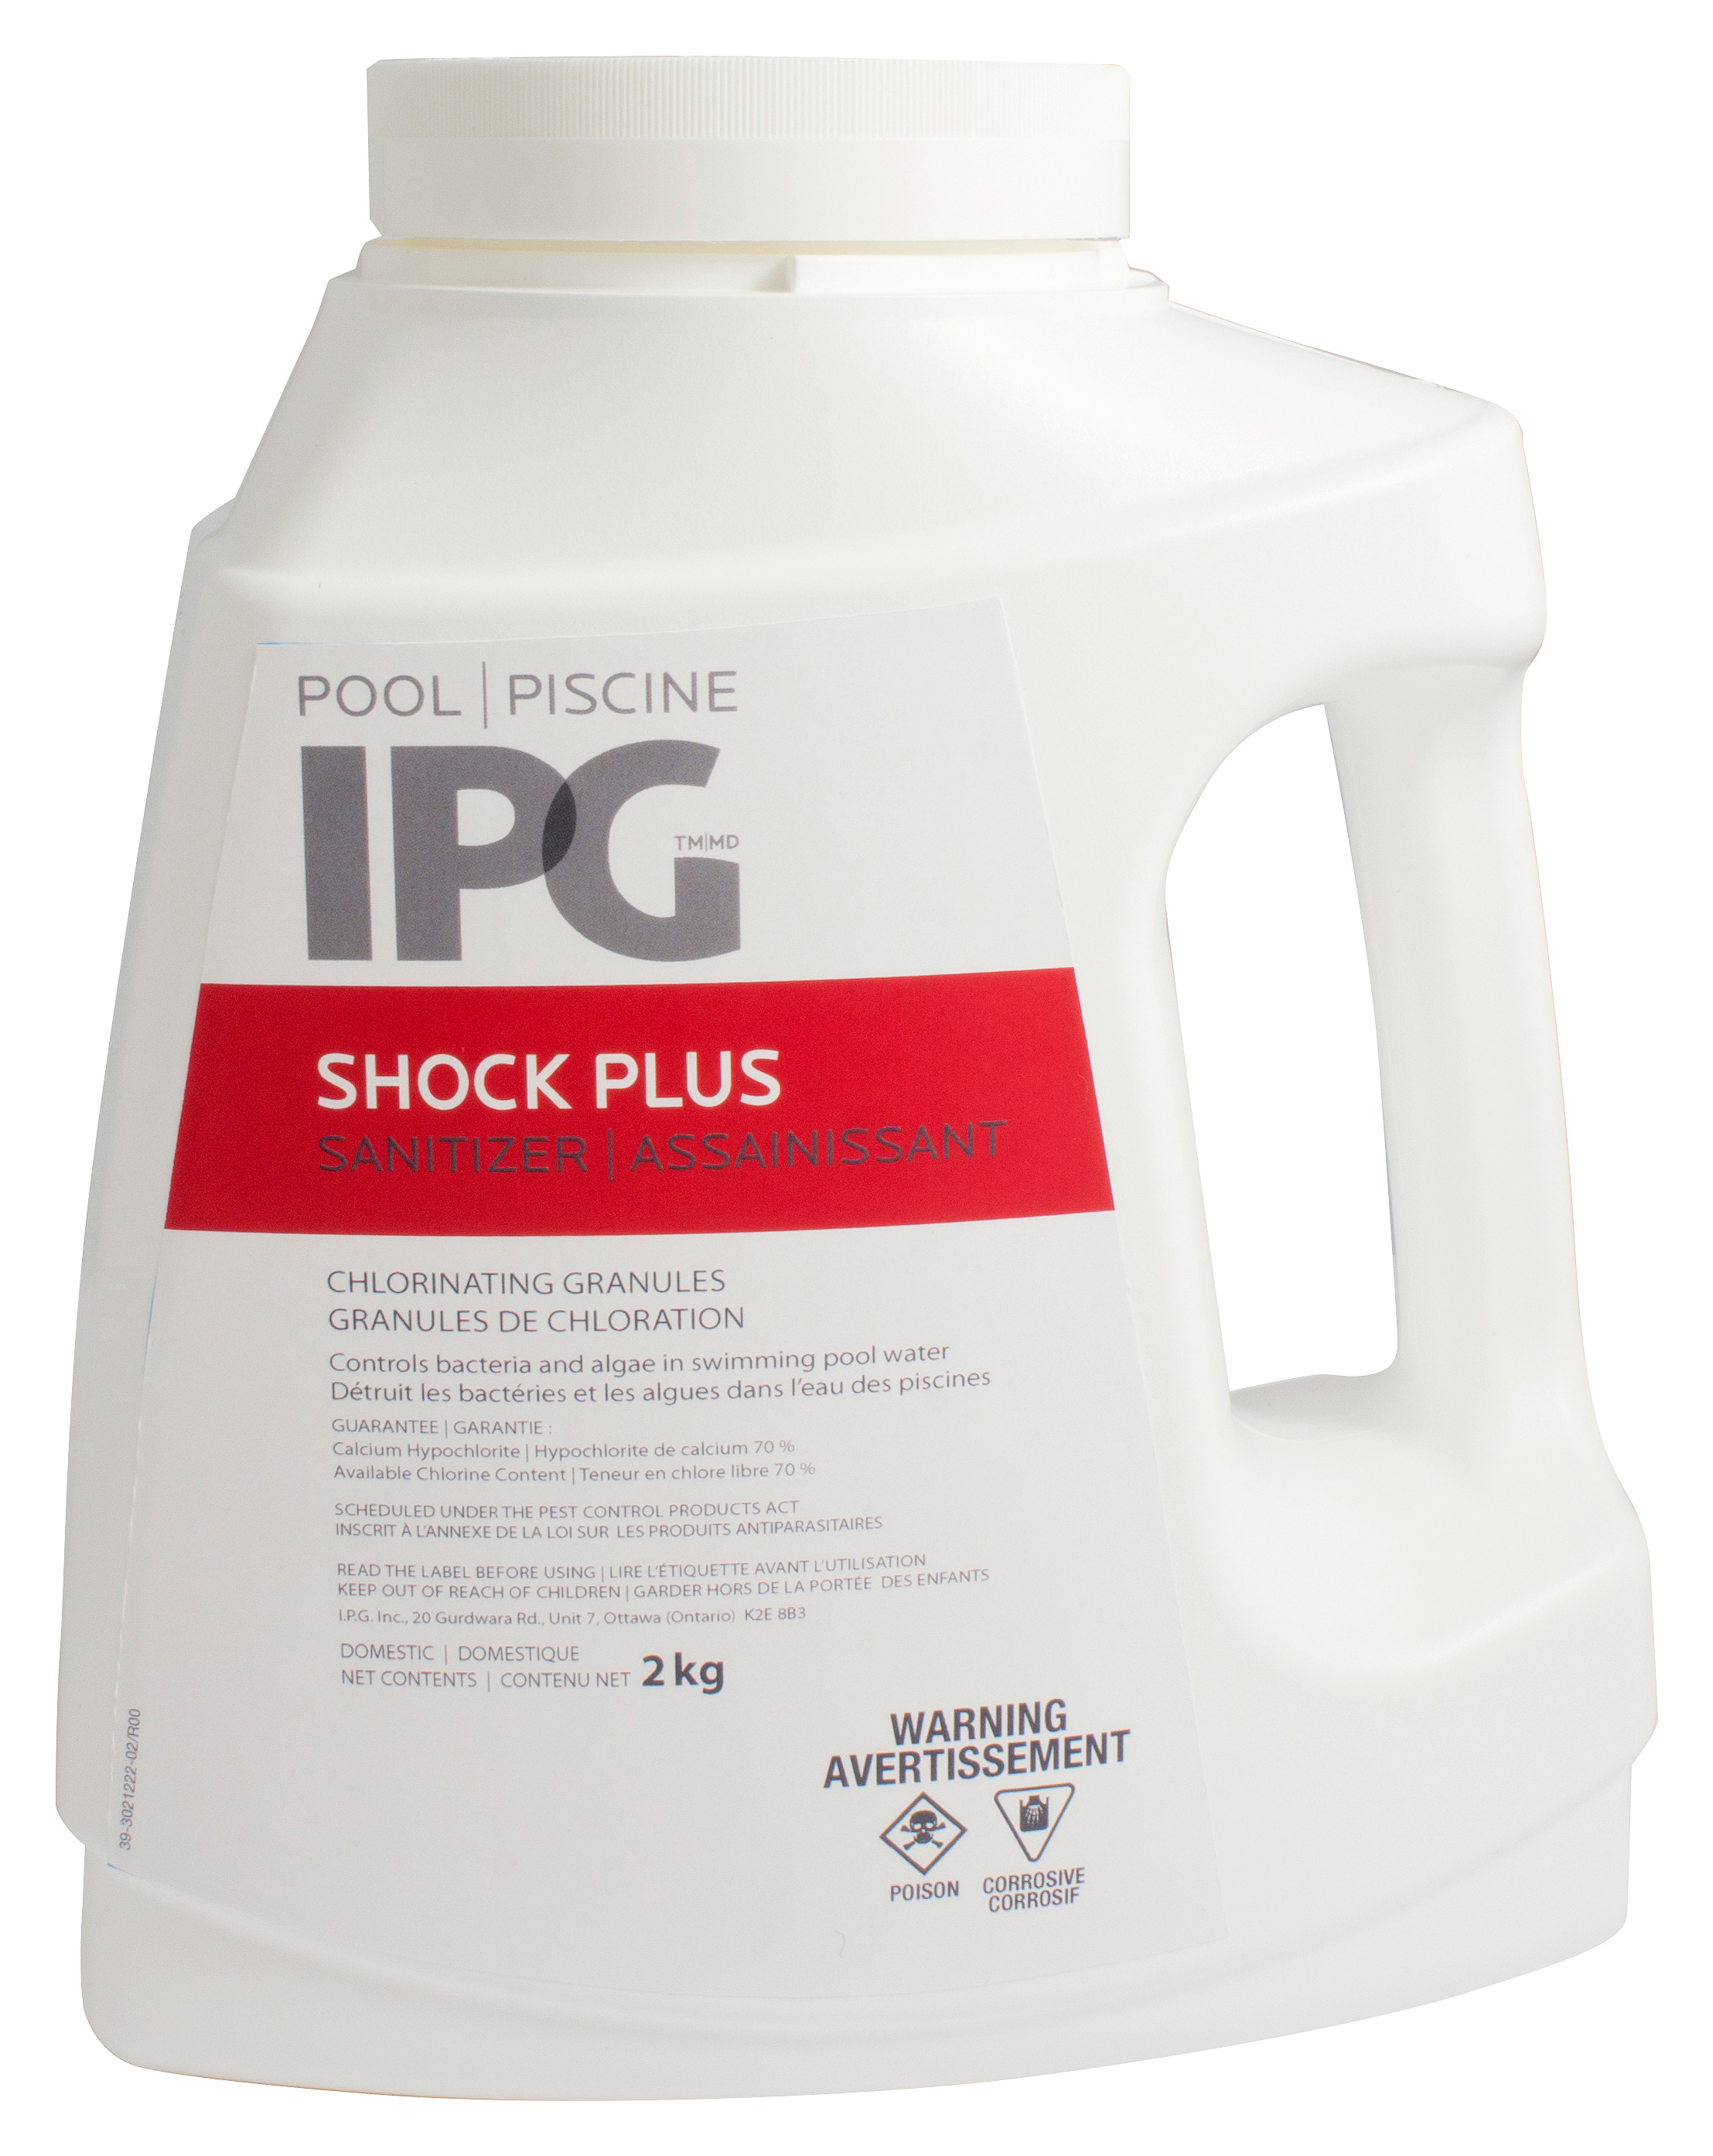 IPG Shock Plus pool sanitizer